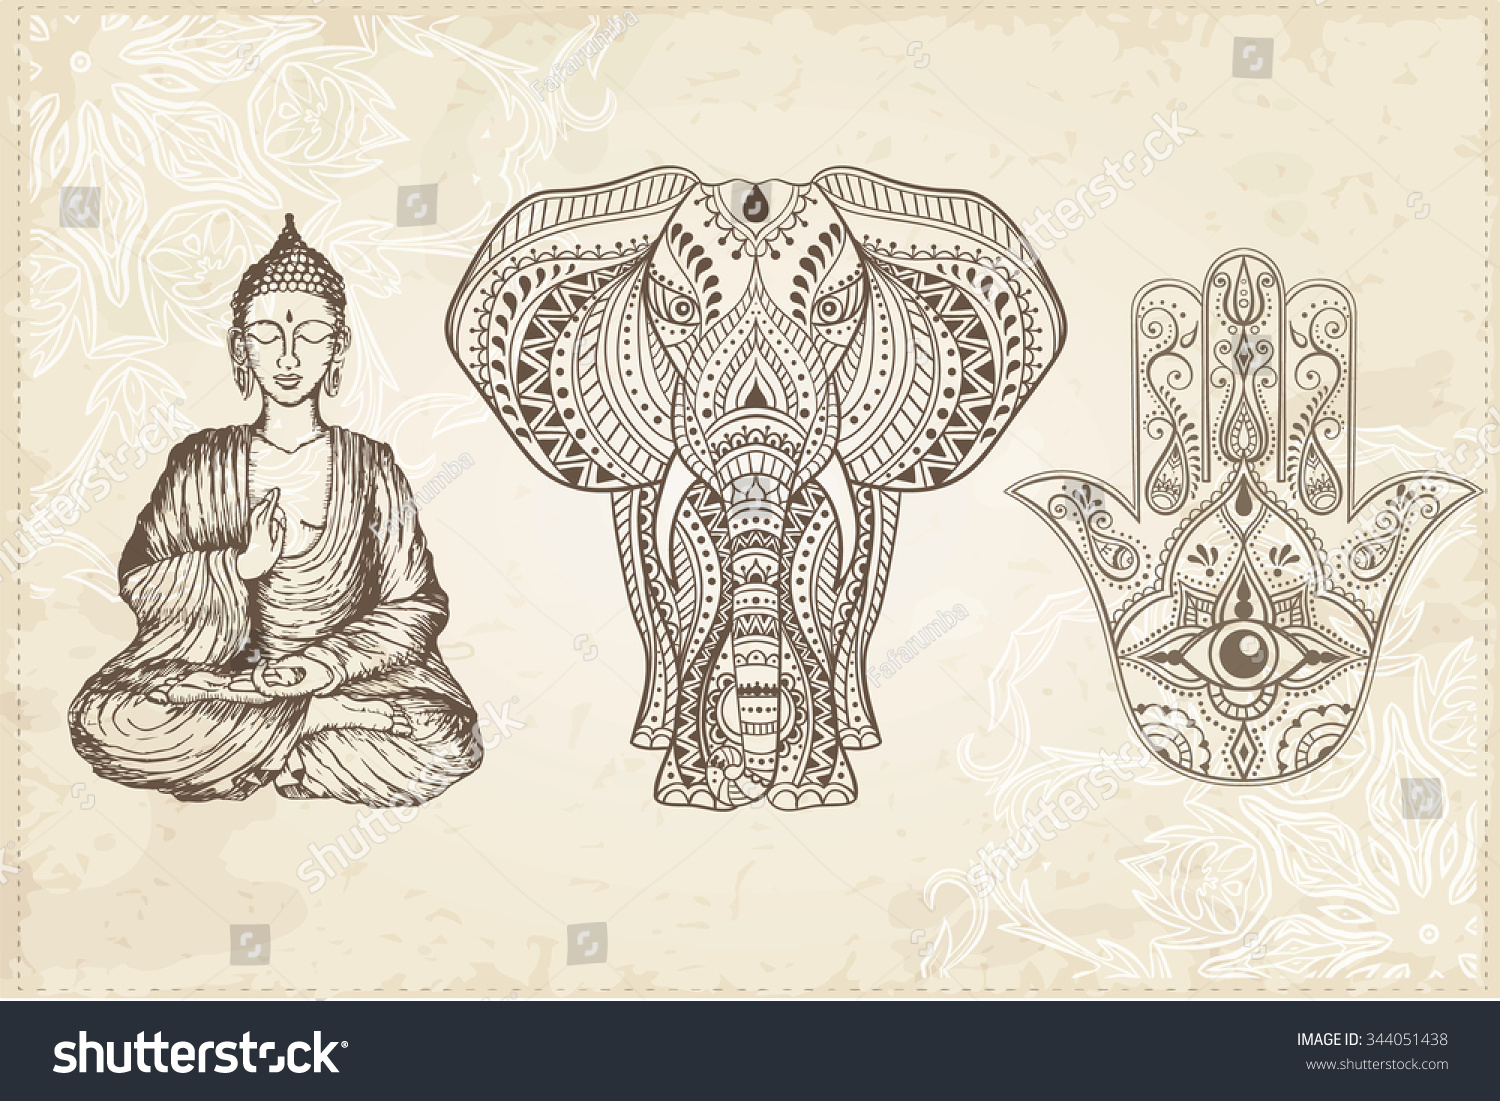 Hamsa Dessiné à la Main par l'Inde avec l'oeil de tous, l'éléphant et le bouddha assis. Amulet arabe et juif. Illustration vectorielle.